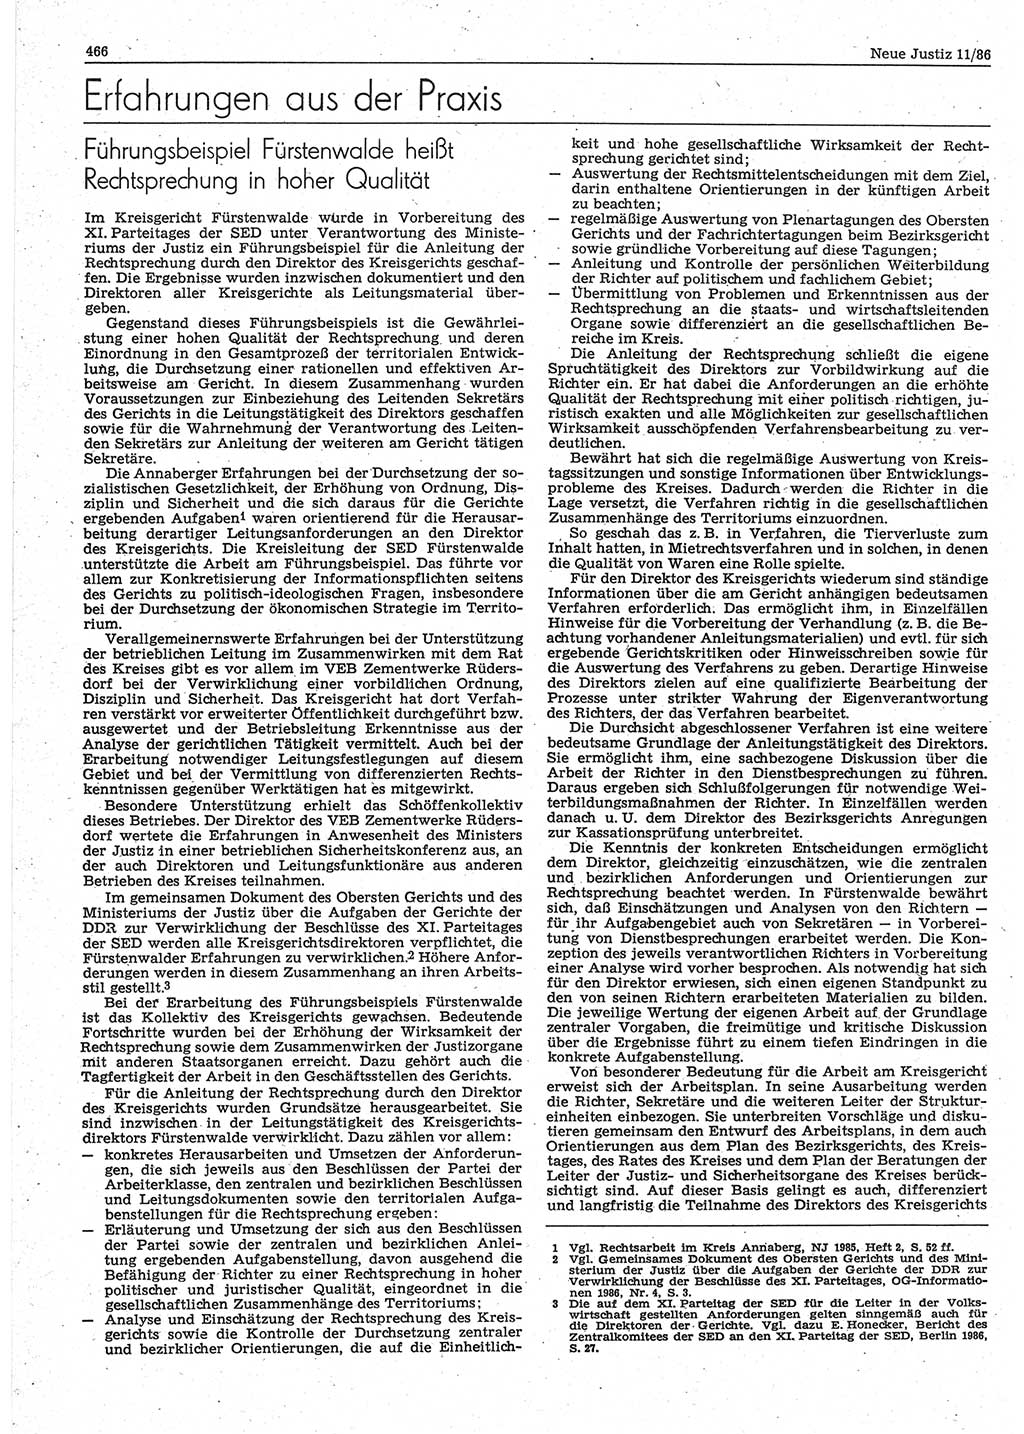 Neue Justiz (NJ), Zeitschrift für sozialistisches Recht und Gesetzlichkeit [Deutsche Demokratische Republik (DDR)], 40. Jahrgang 1986, Seite 466 (NJ DDR 1986, S. 466)